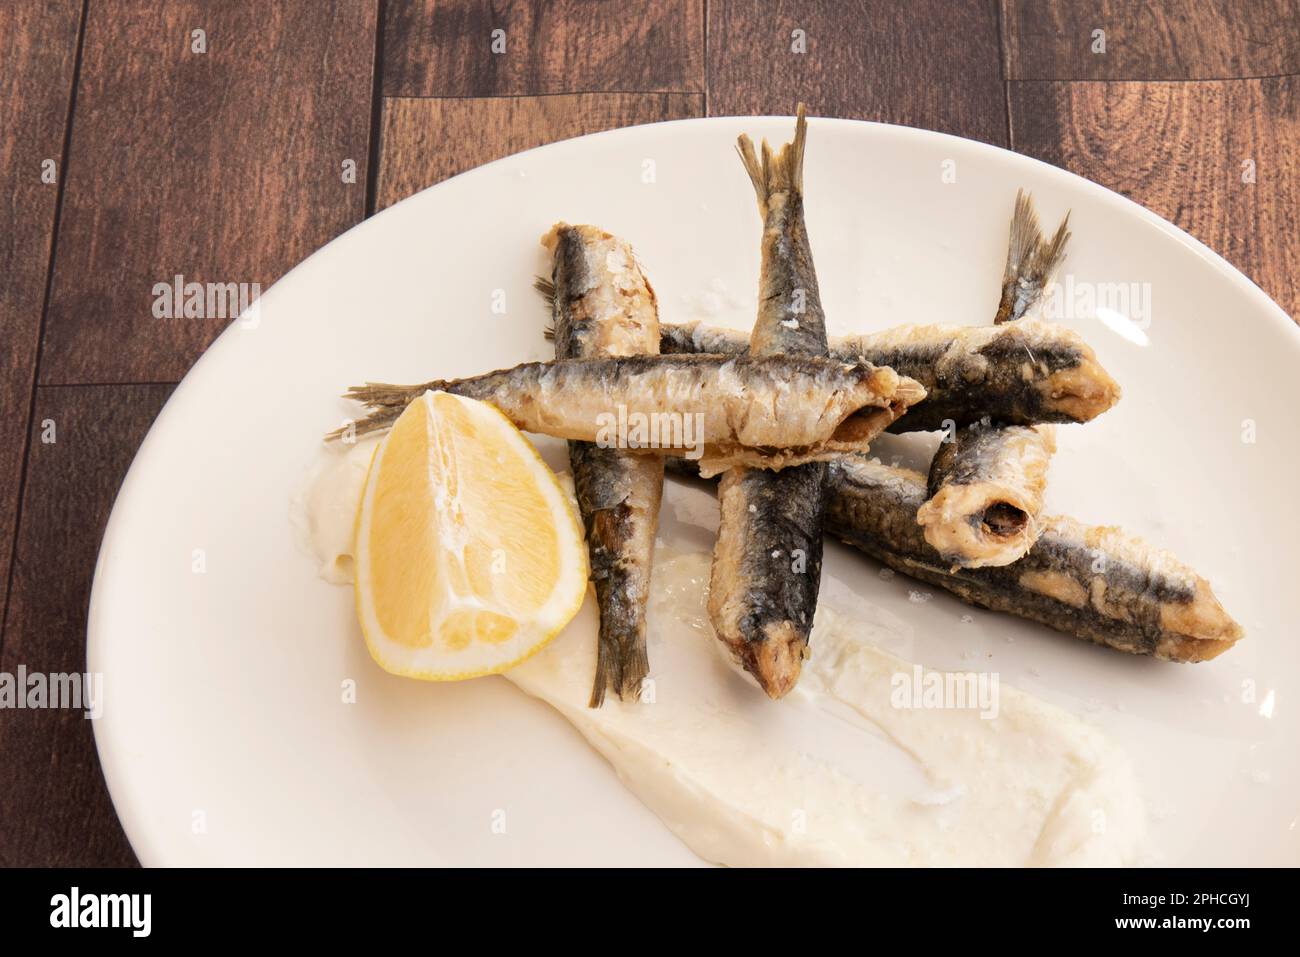 Porción de anchoas fritas servidas como tapa. La anchoa es muy apreciada en la cocina de los países de la cuenca mediterránea por la flav Foto de stock